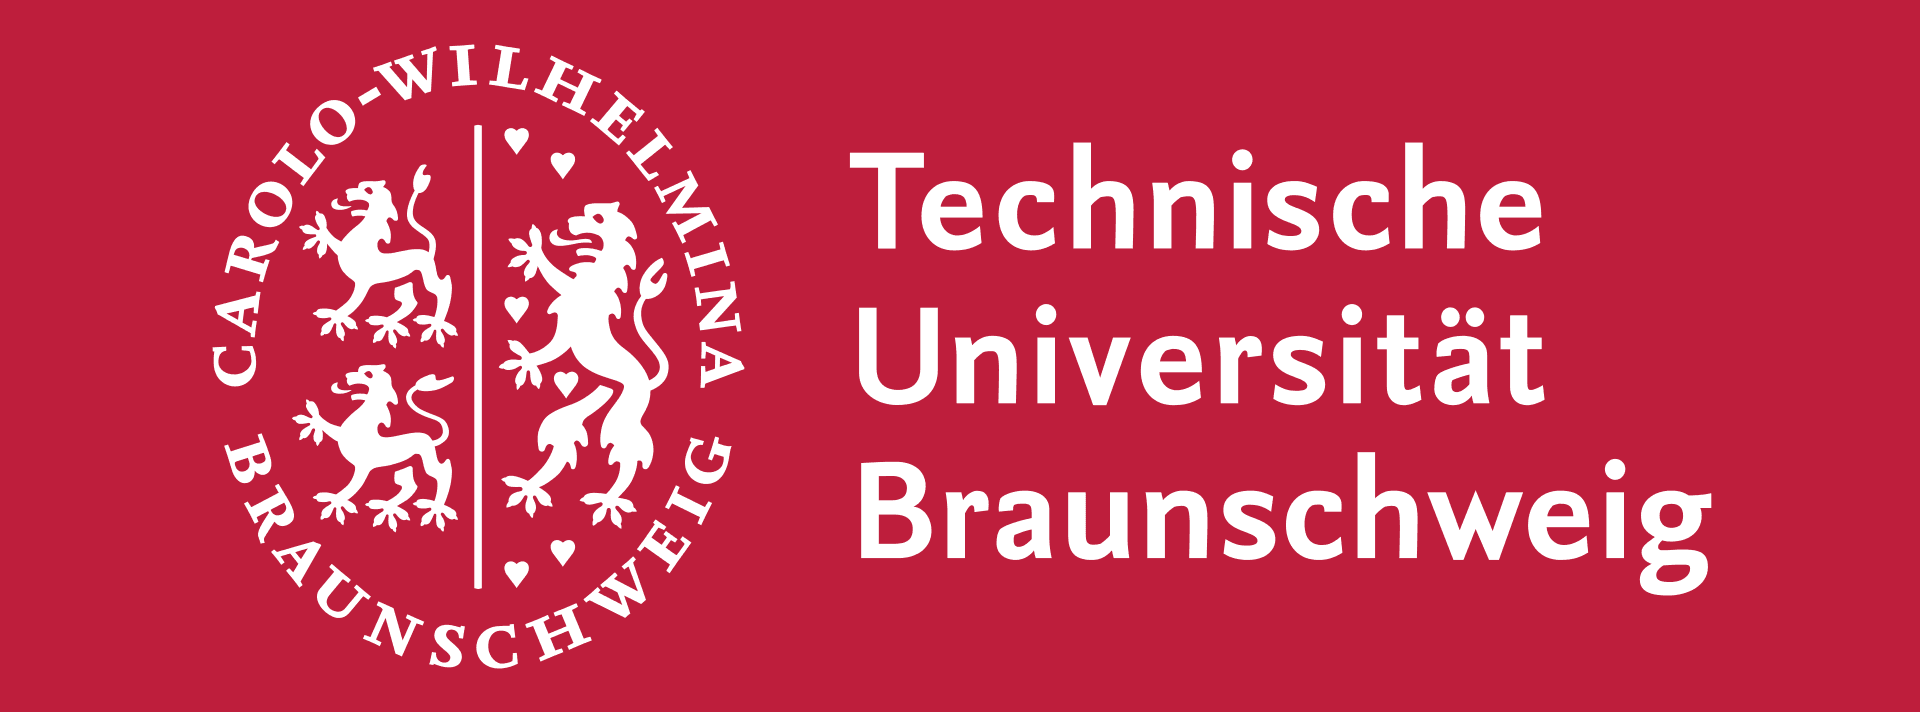 technische-universitat-braunschweig-641866c578-cover-picture